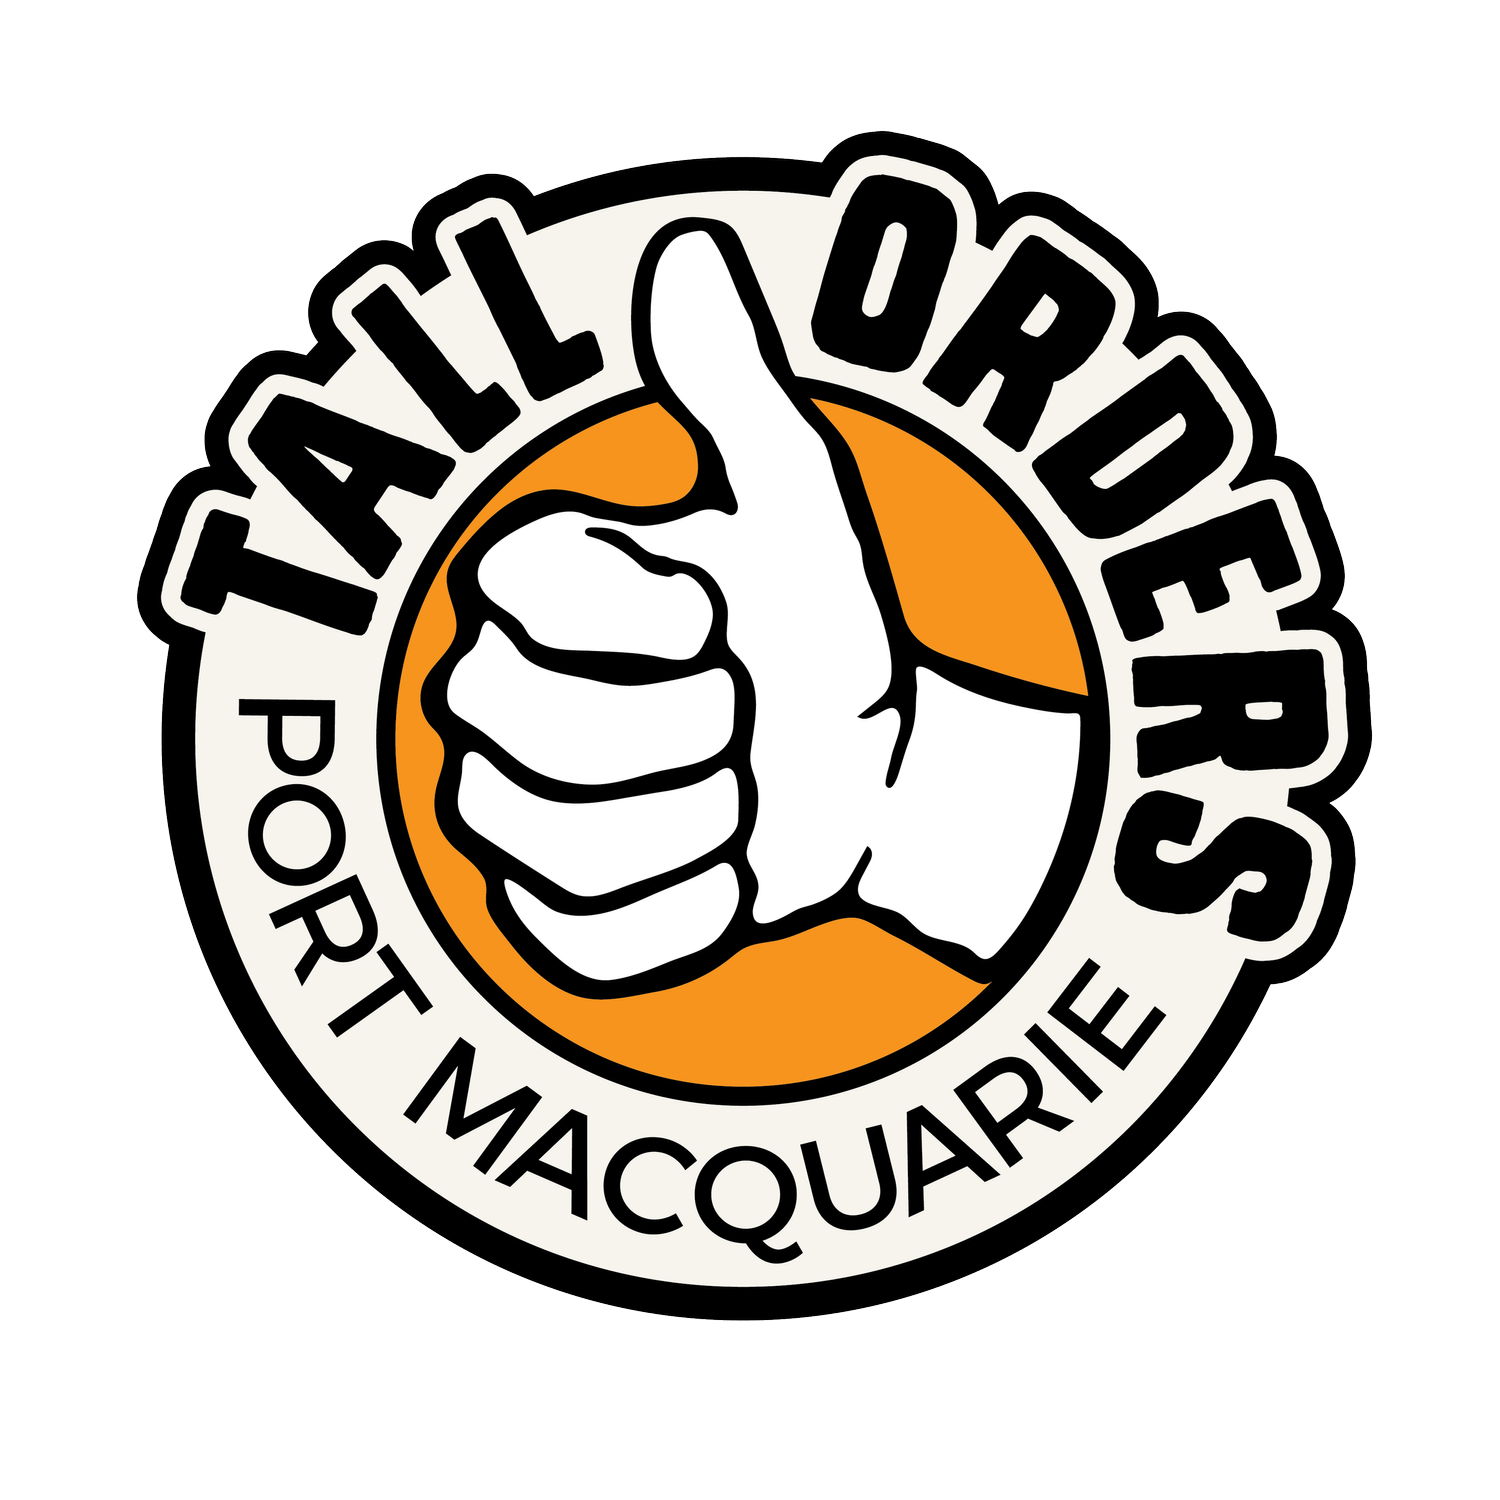 Tall Orders PMQ